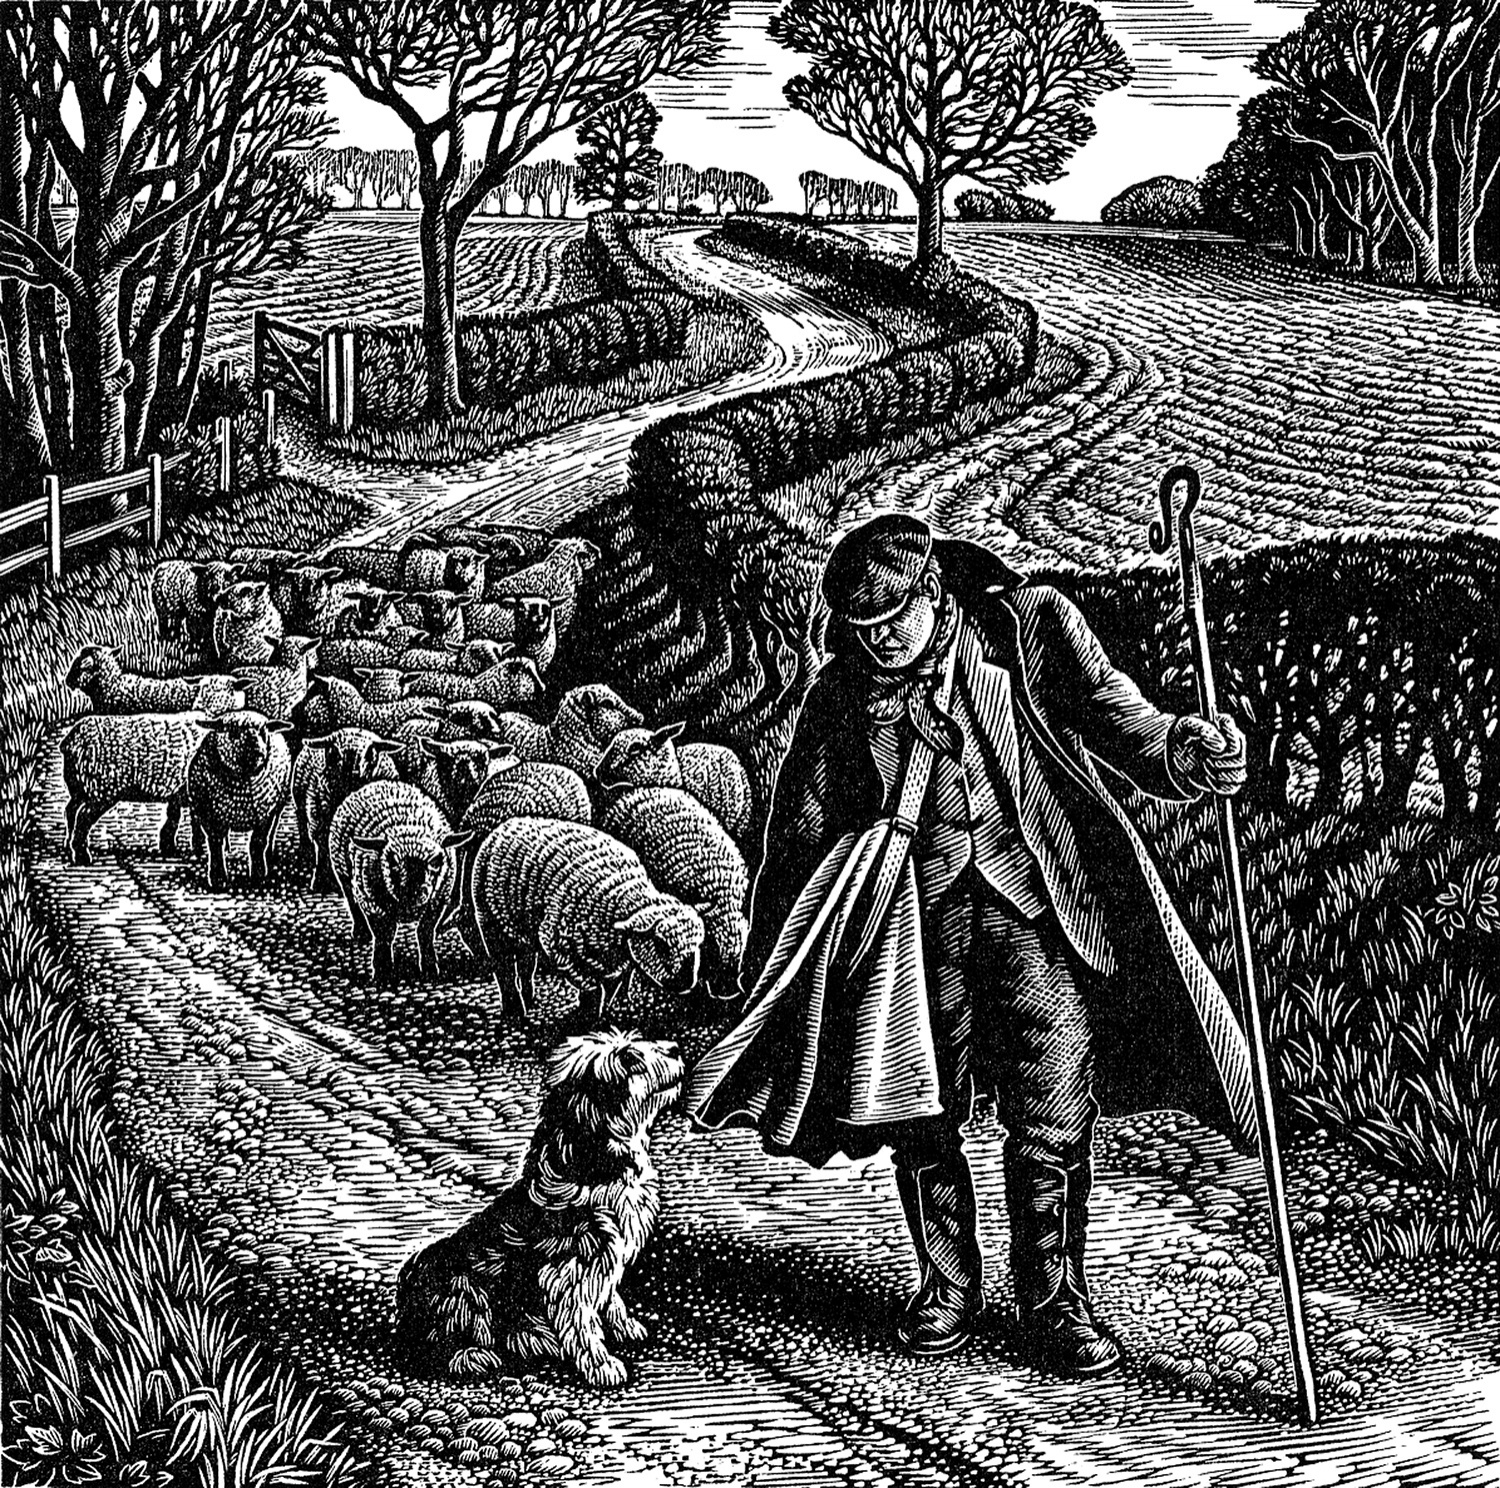 Suffolk Shepherd by Howard Phipps